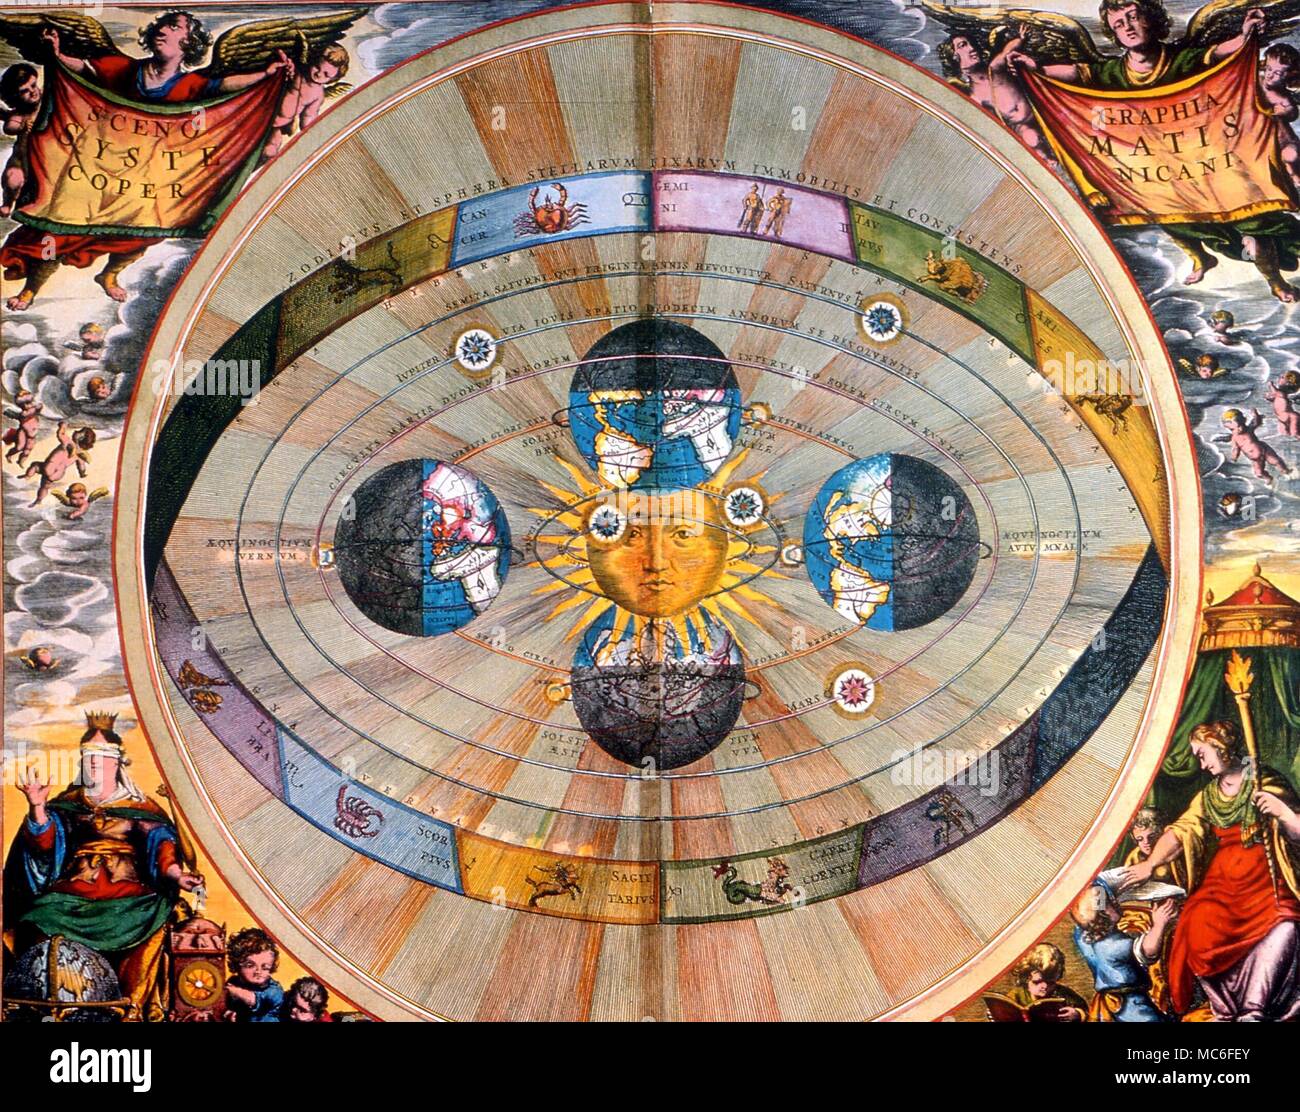 Une représentation de l'astrologie l'cosmoconception copernicienne, avec le groupe de musique traditionnel et mort-phases. À partir de la Andrea Cellarius 'Atlas Coelestis seu Harmonia Macrocosmica', Amsterdam, 1660 Banque D'Images